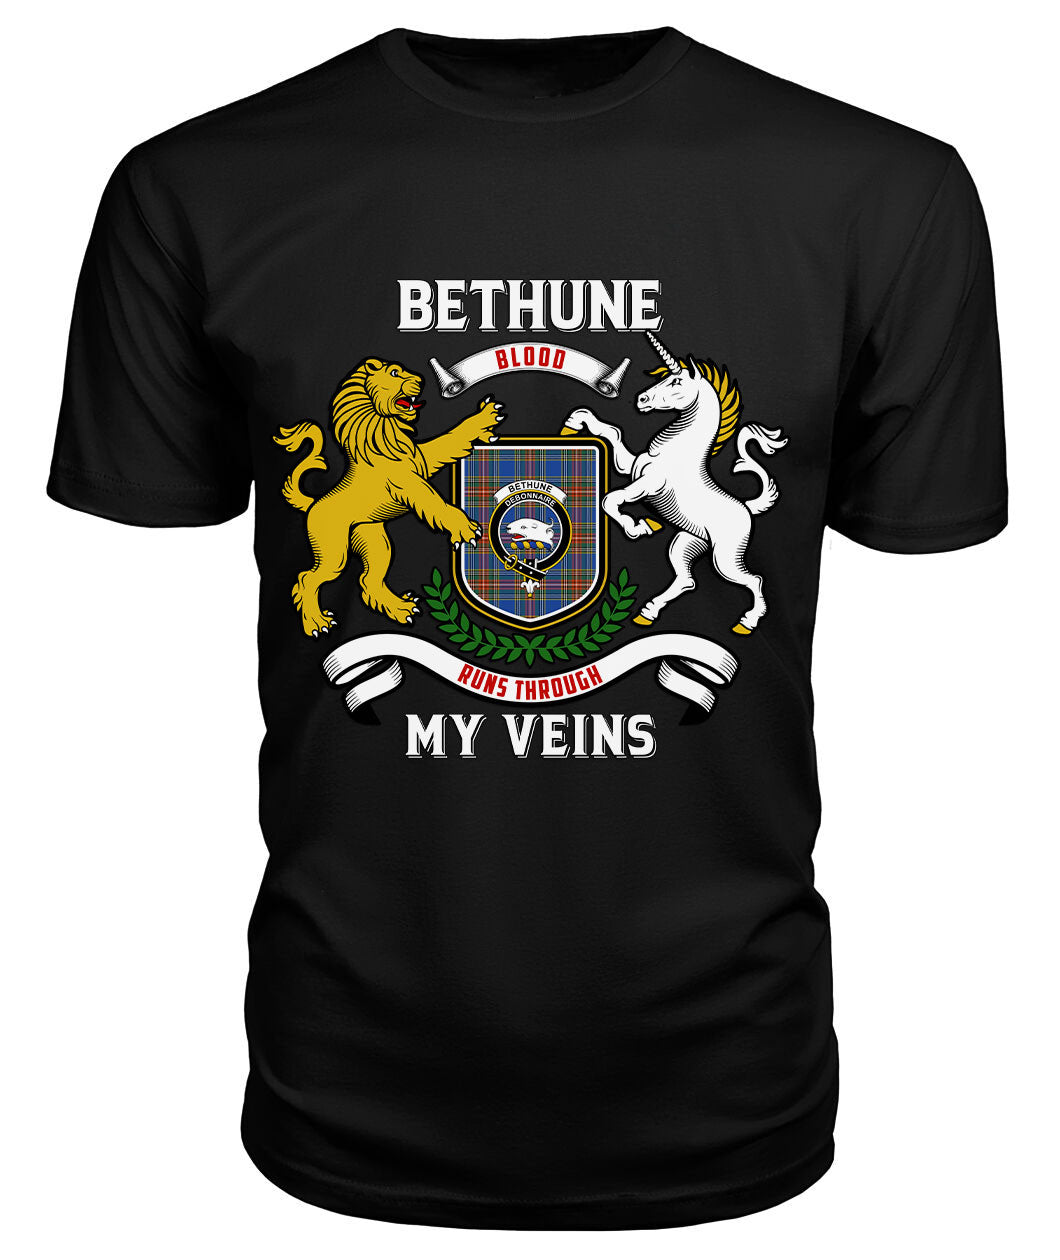 Bethune Ancient Tartan Crest 2D T-shirt - Blood Runs Through My Veins Style